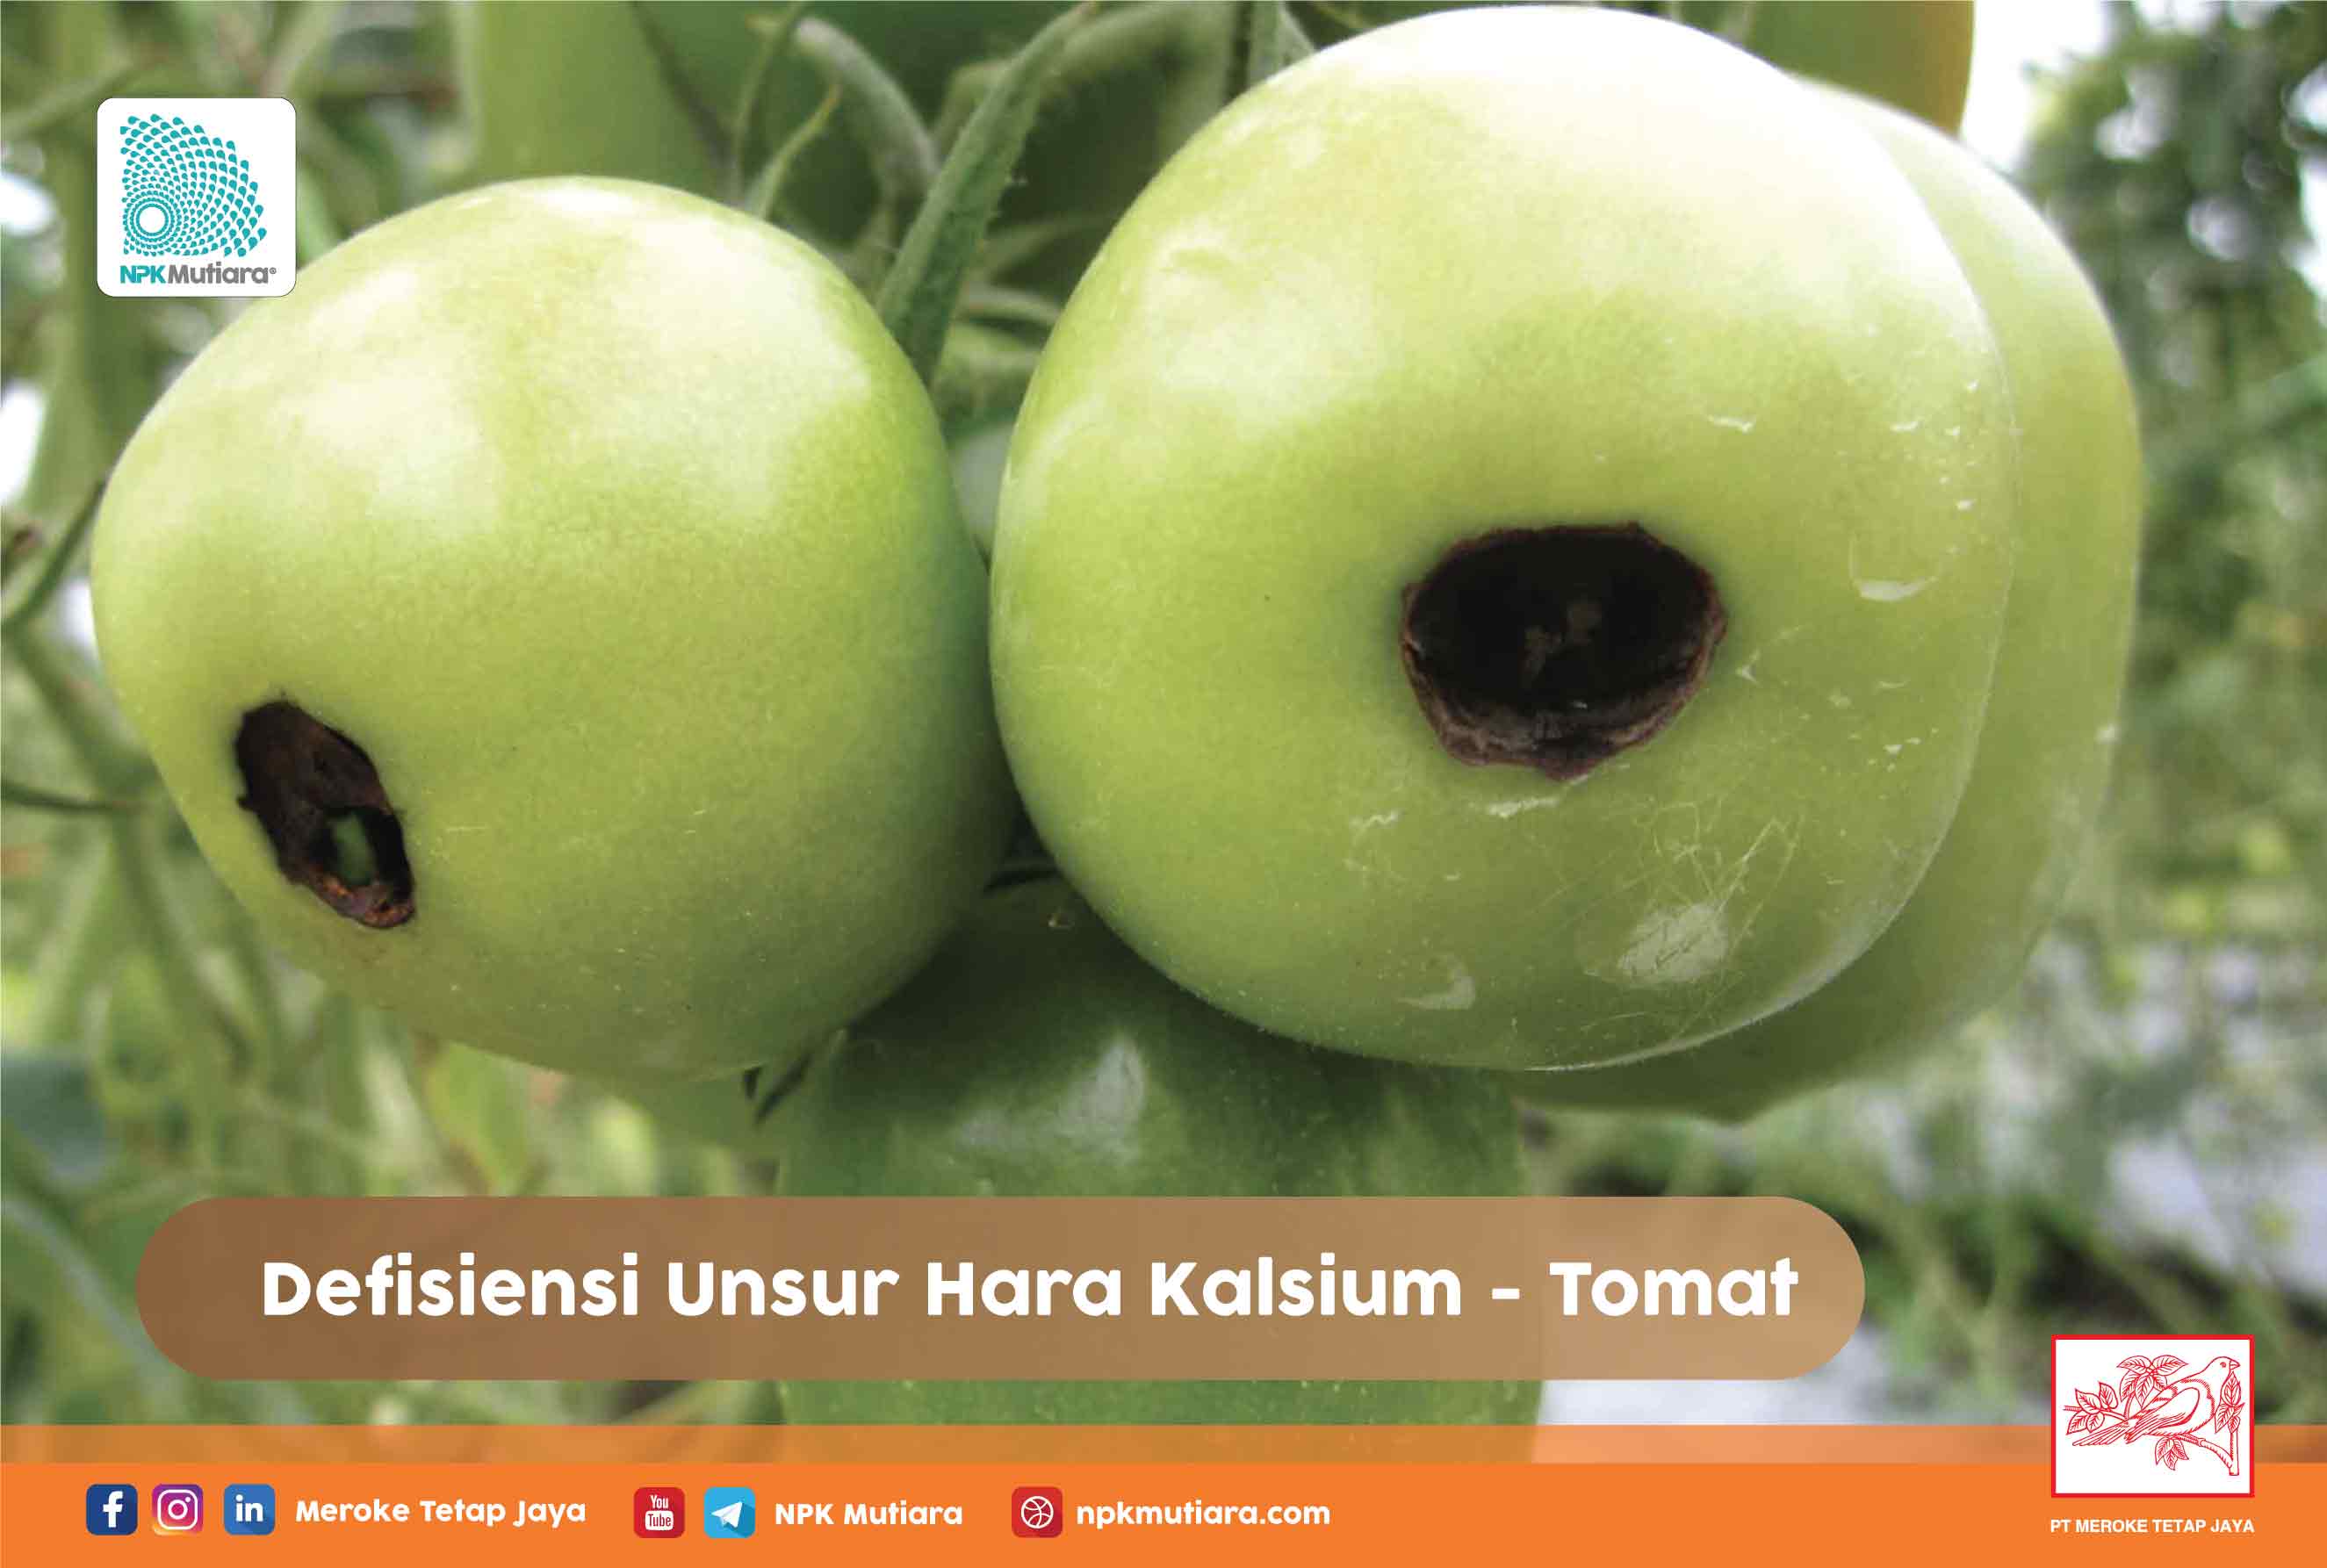 Defisiensi Unsur Hara Kalsium pada Tomat